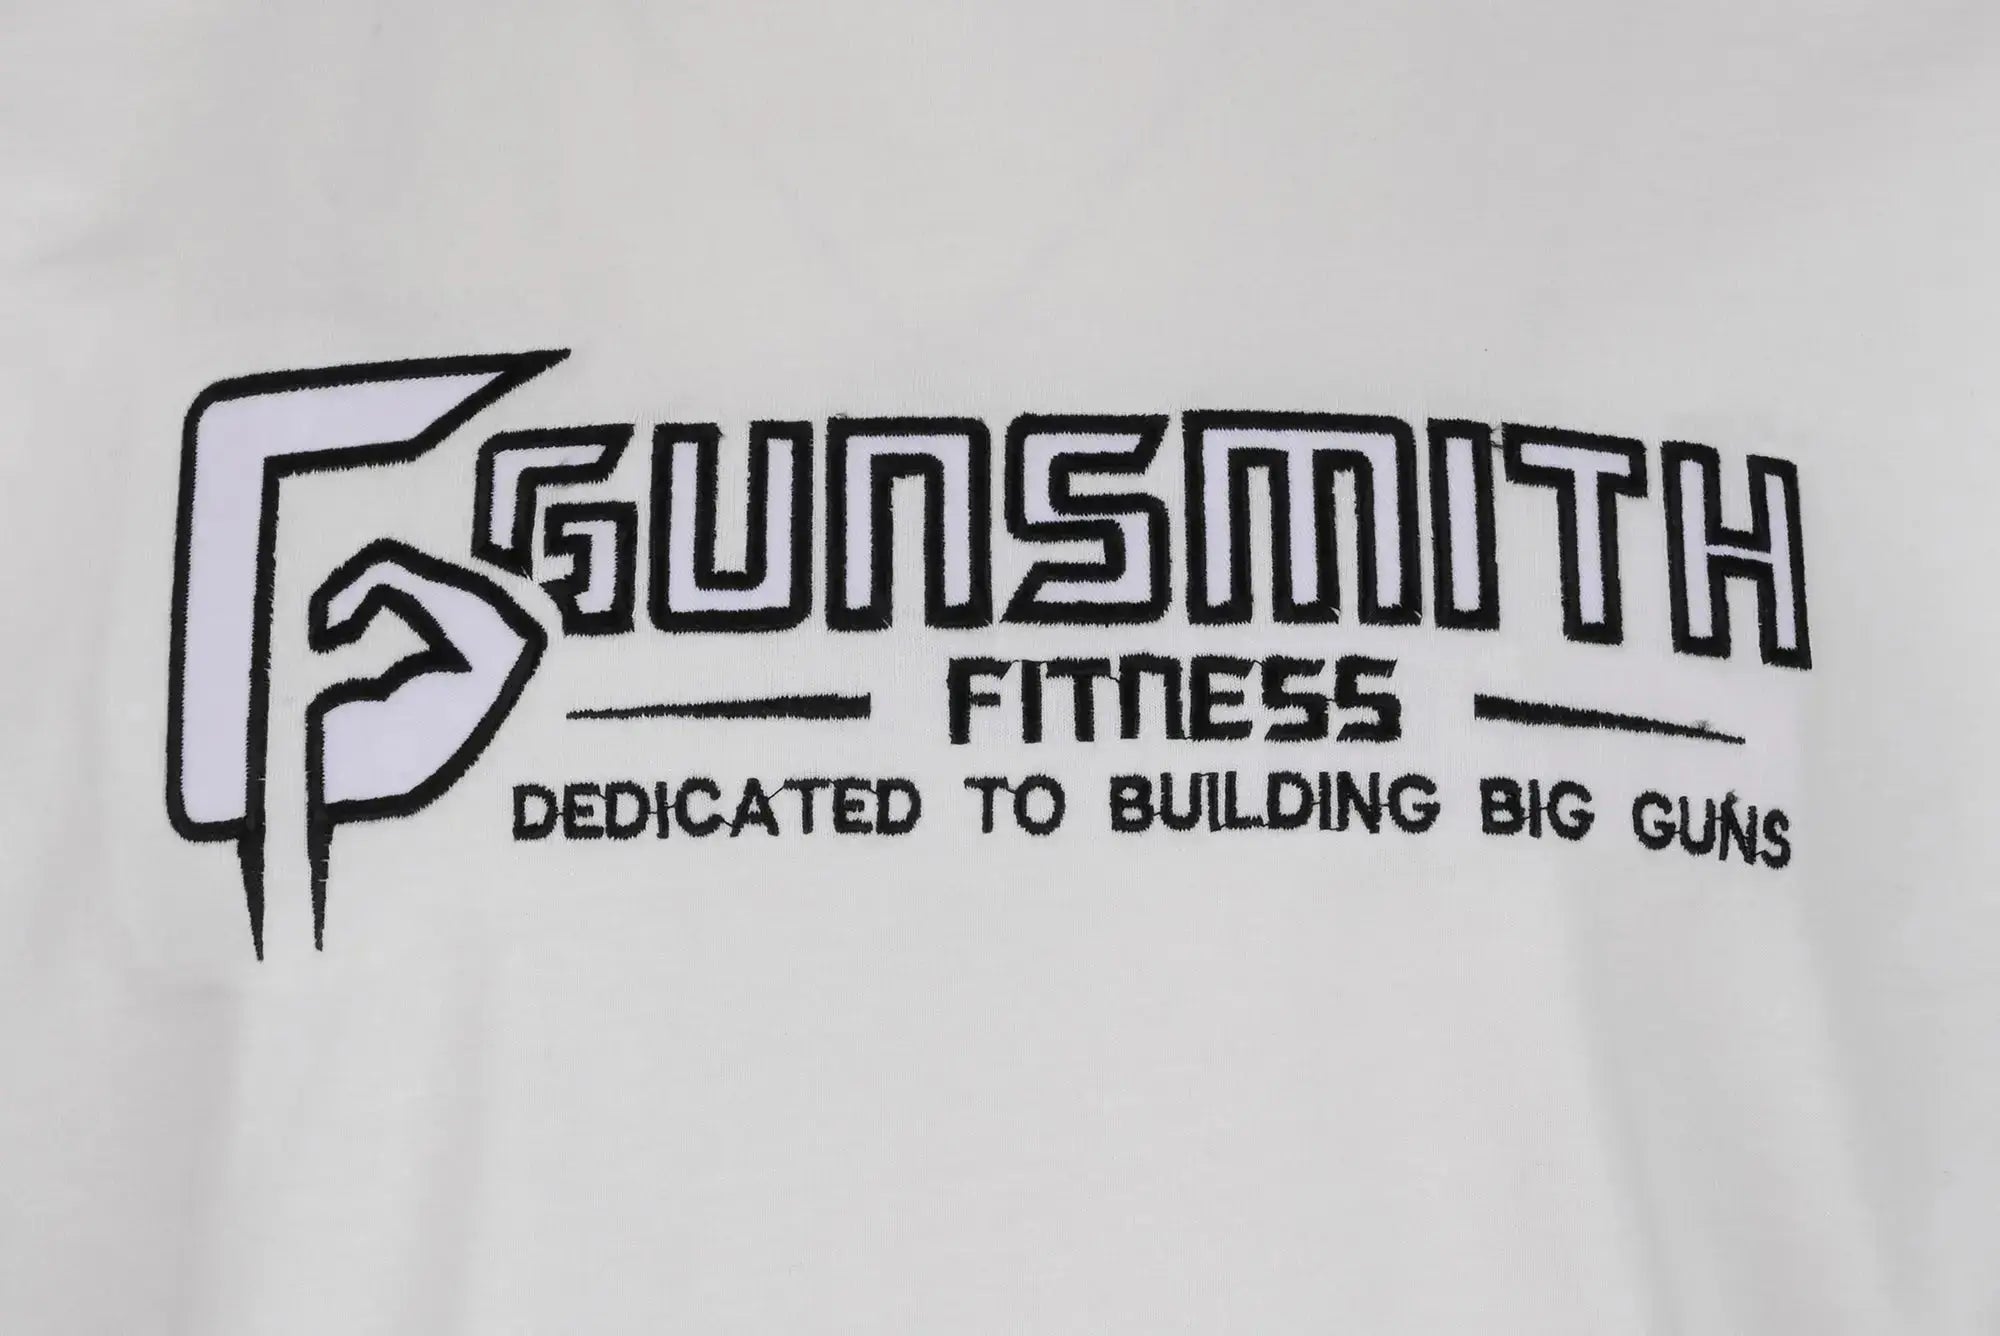 Gunsmith Apex Oversized T Shirt - Gunsmith Fitness